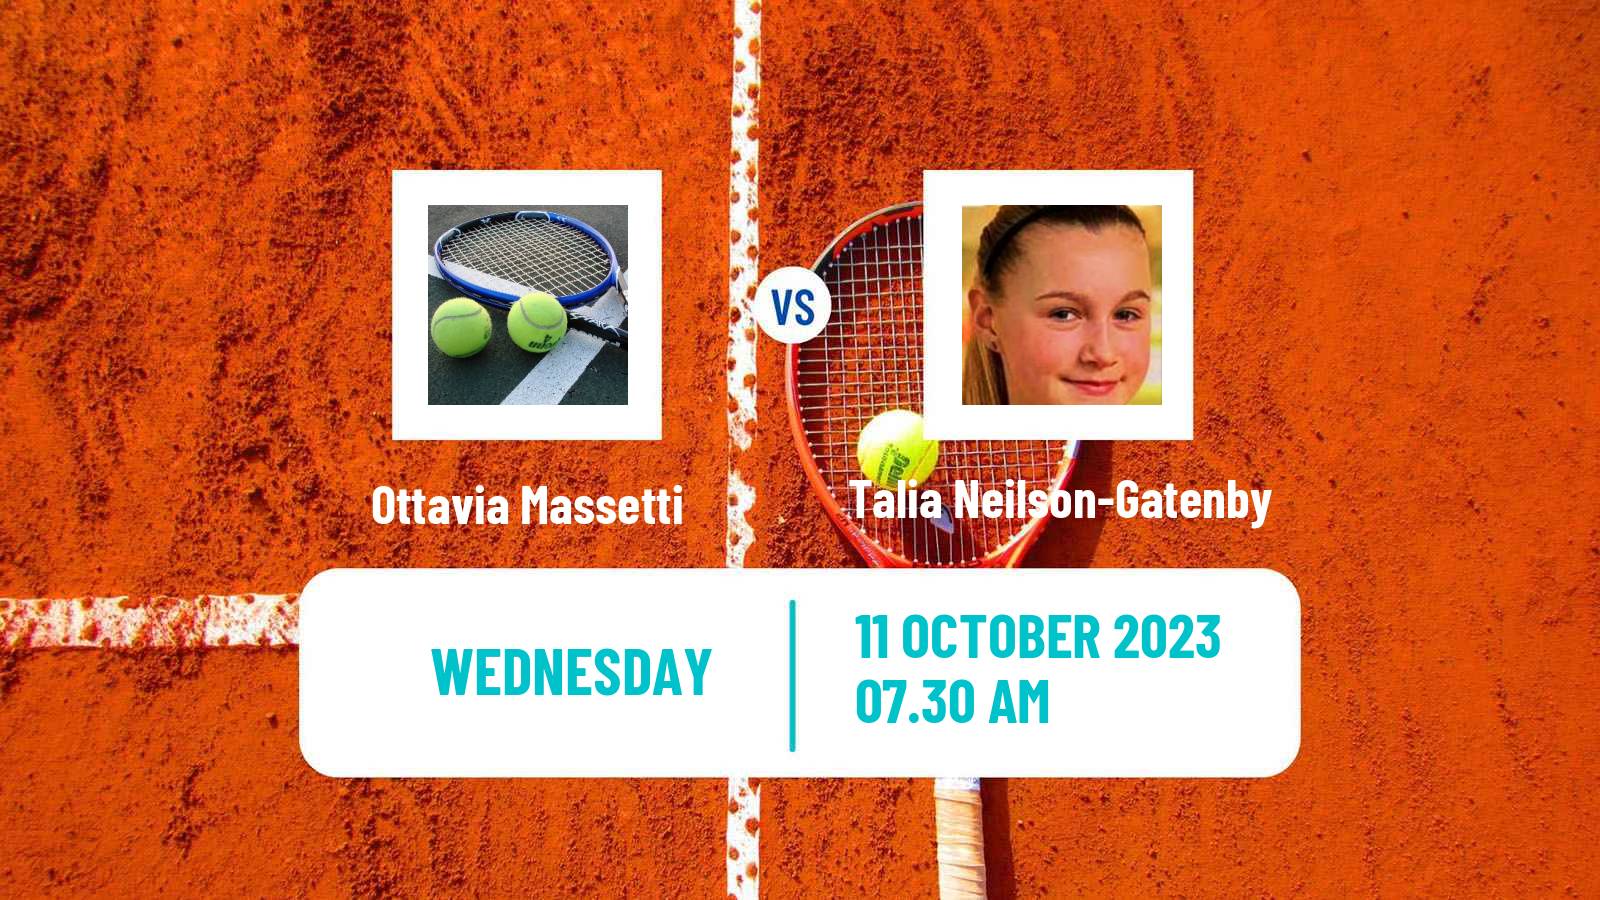 Tennis ITF W15 Sharm Elsheikh 14 Women Ottavia Massetti - Talia Neilson-Gatenby